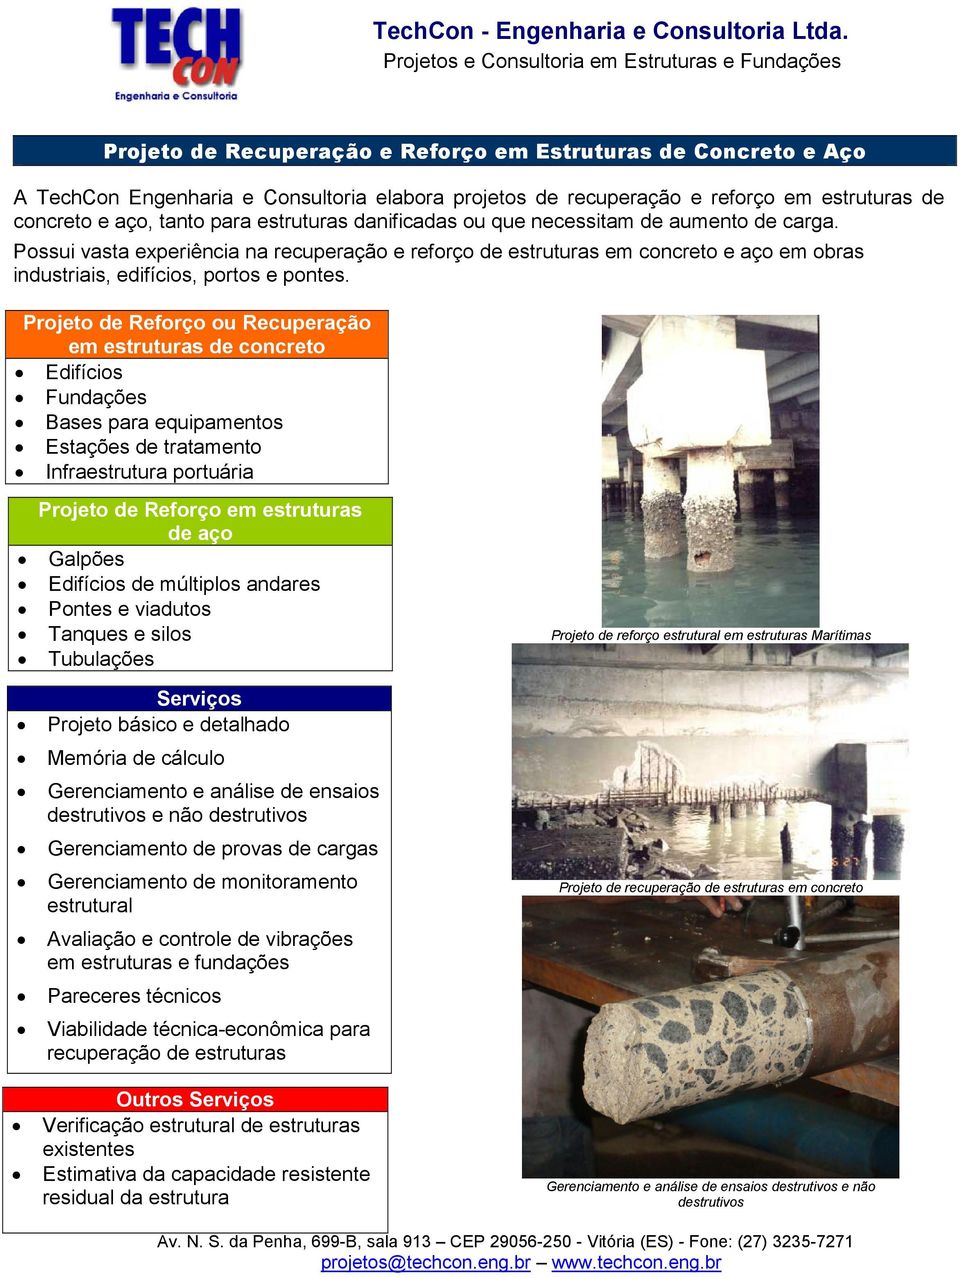 Projeto de Reforço ou Recuperação em estruturas de concreto Edifícios Fundações Bases para equipamentos Estações de tratamento Infraestrutura portuária Projeto de Reforço em estruturas de aço Galpões